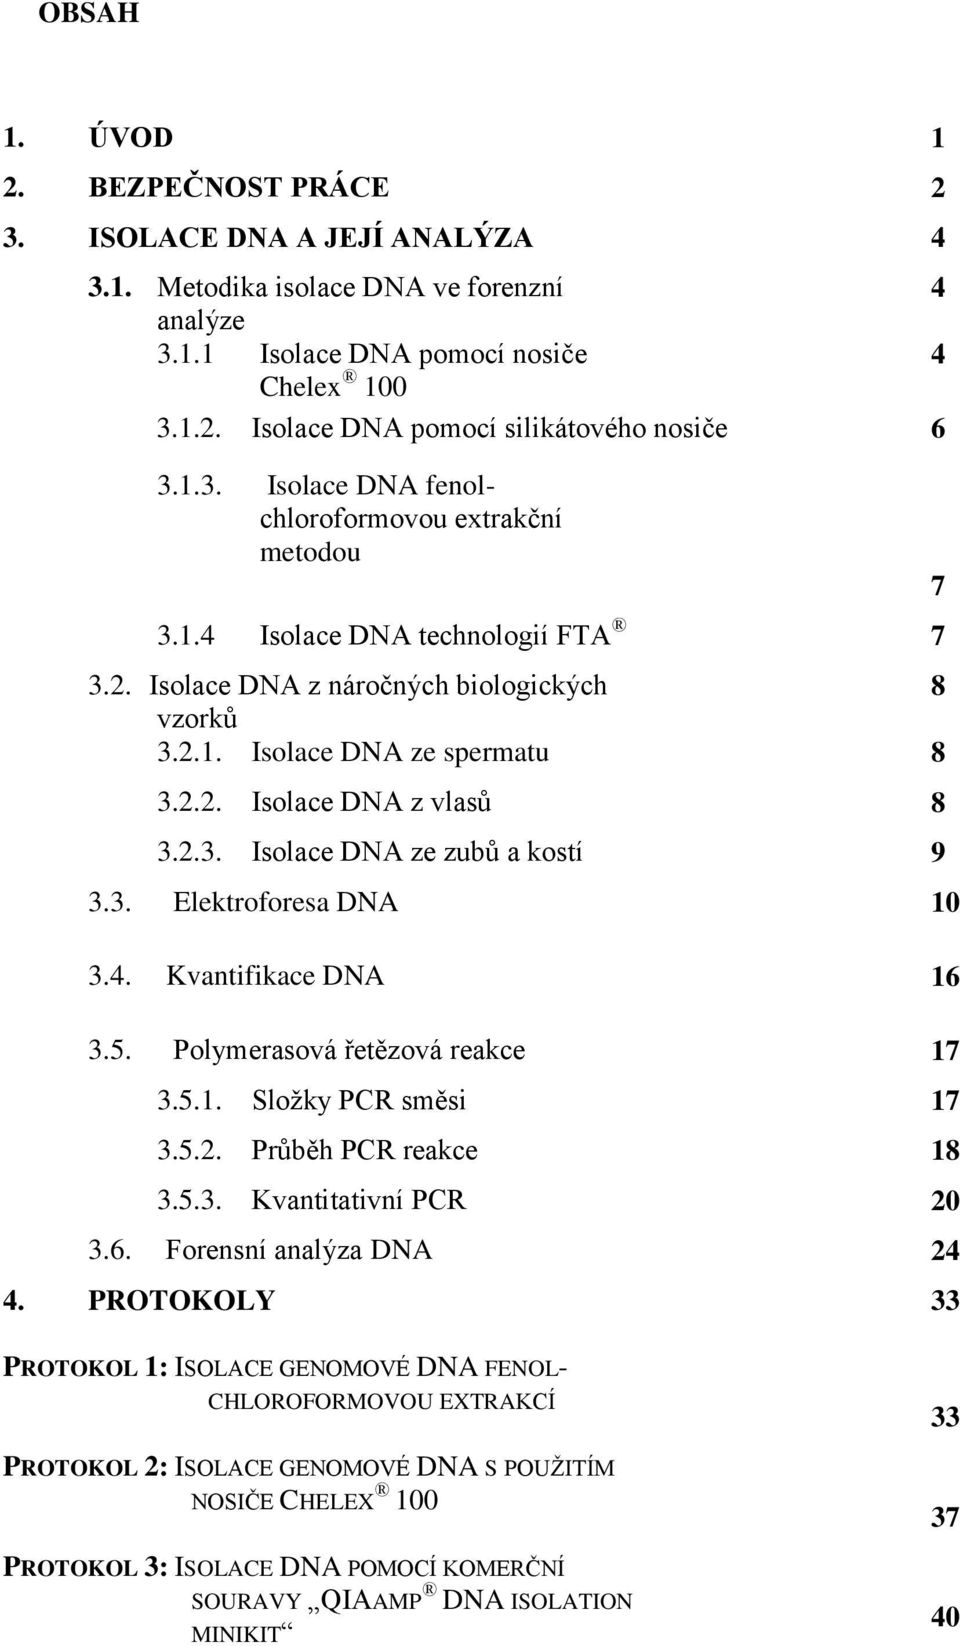 2.3. Isolace DNA ze zubů a kostí 9 3.3. Elektroforesa DNA 10 3.4. Kvantifikace DNA 16 3.5. Polymerasová řetězová reakce 17 3.5.1. Složky PCR směsi 17 3.5.2. Průběh PCR reakce 18 3.5.3. Kvantitativní PCR 20 3.